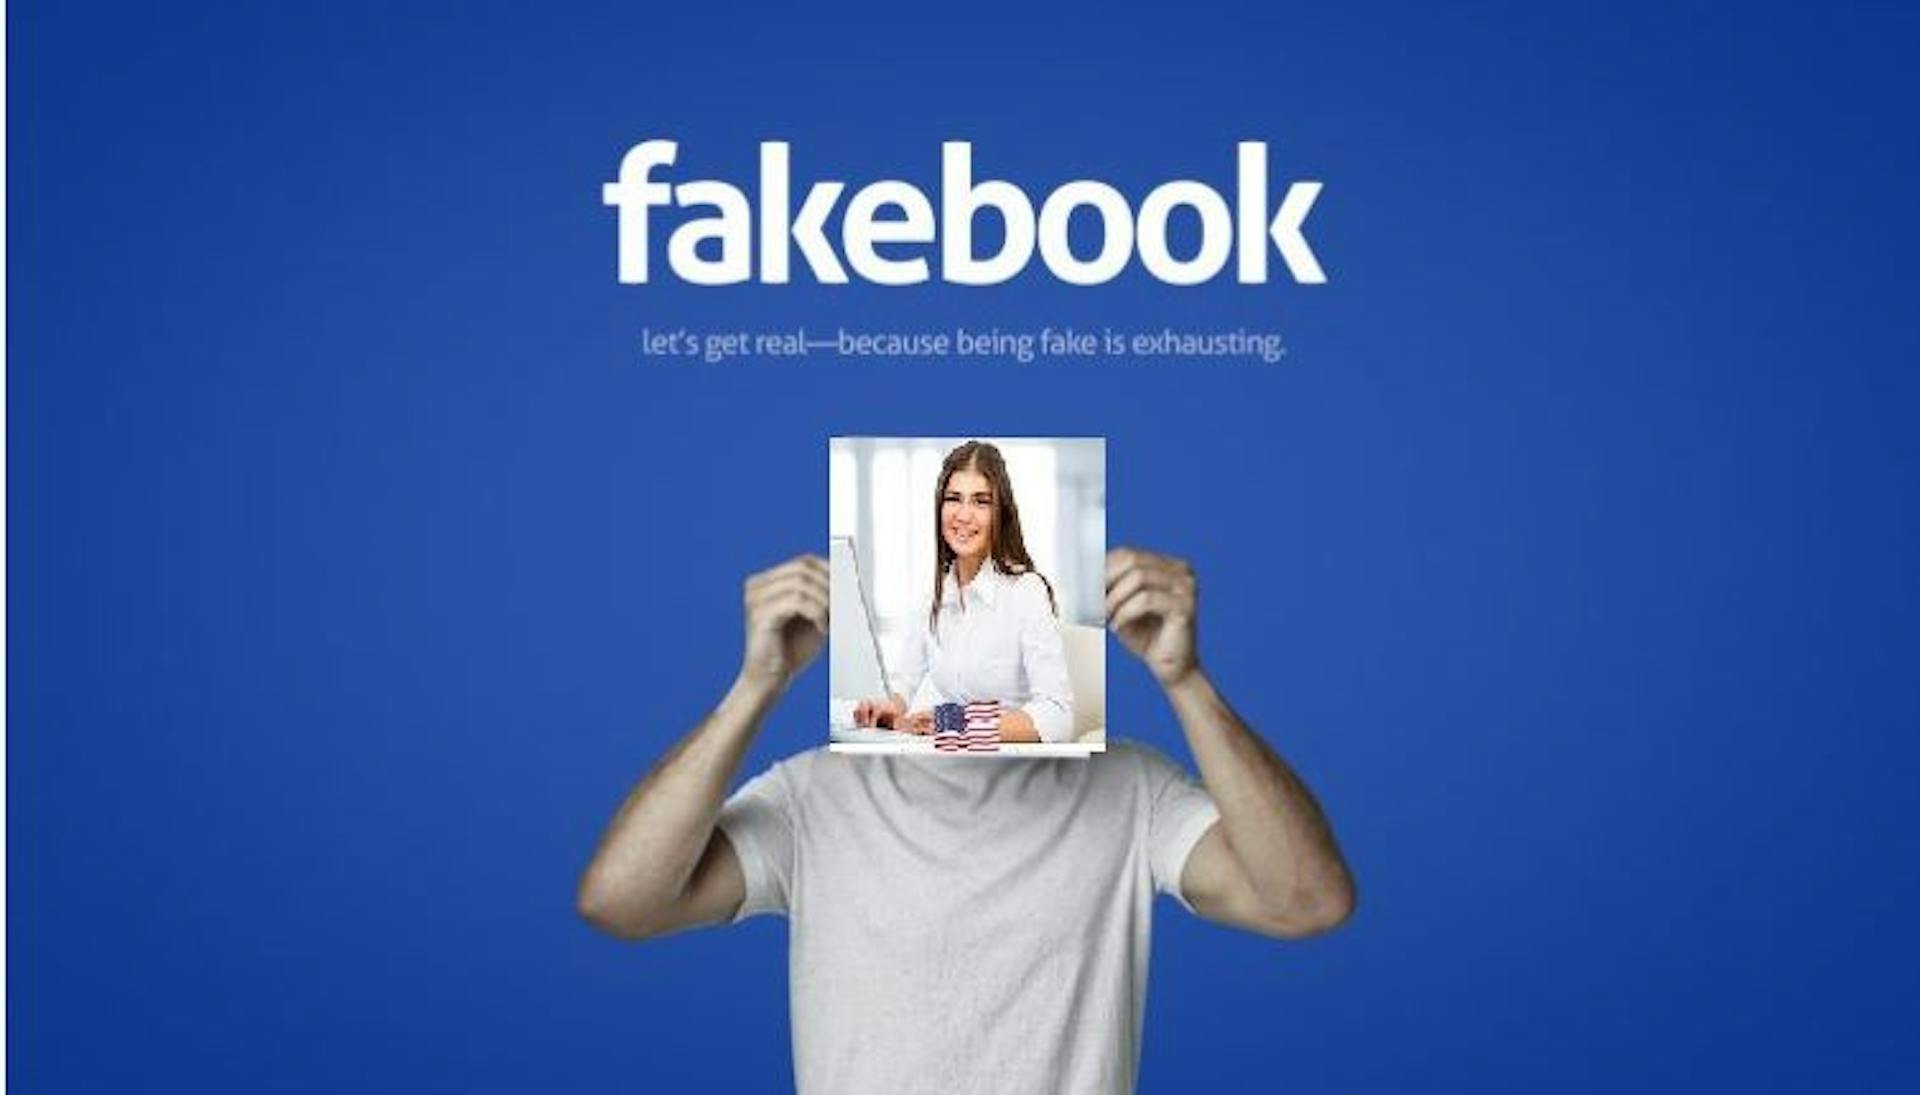 featured image - Conoce a Lucy Audrey, el perfil falso deshonesto que Facebook se niega a suspender